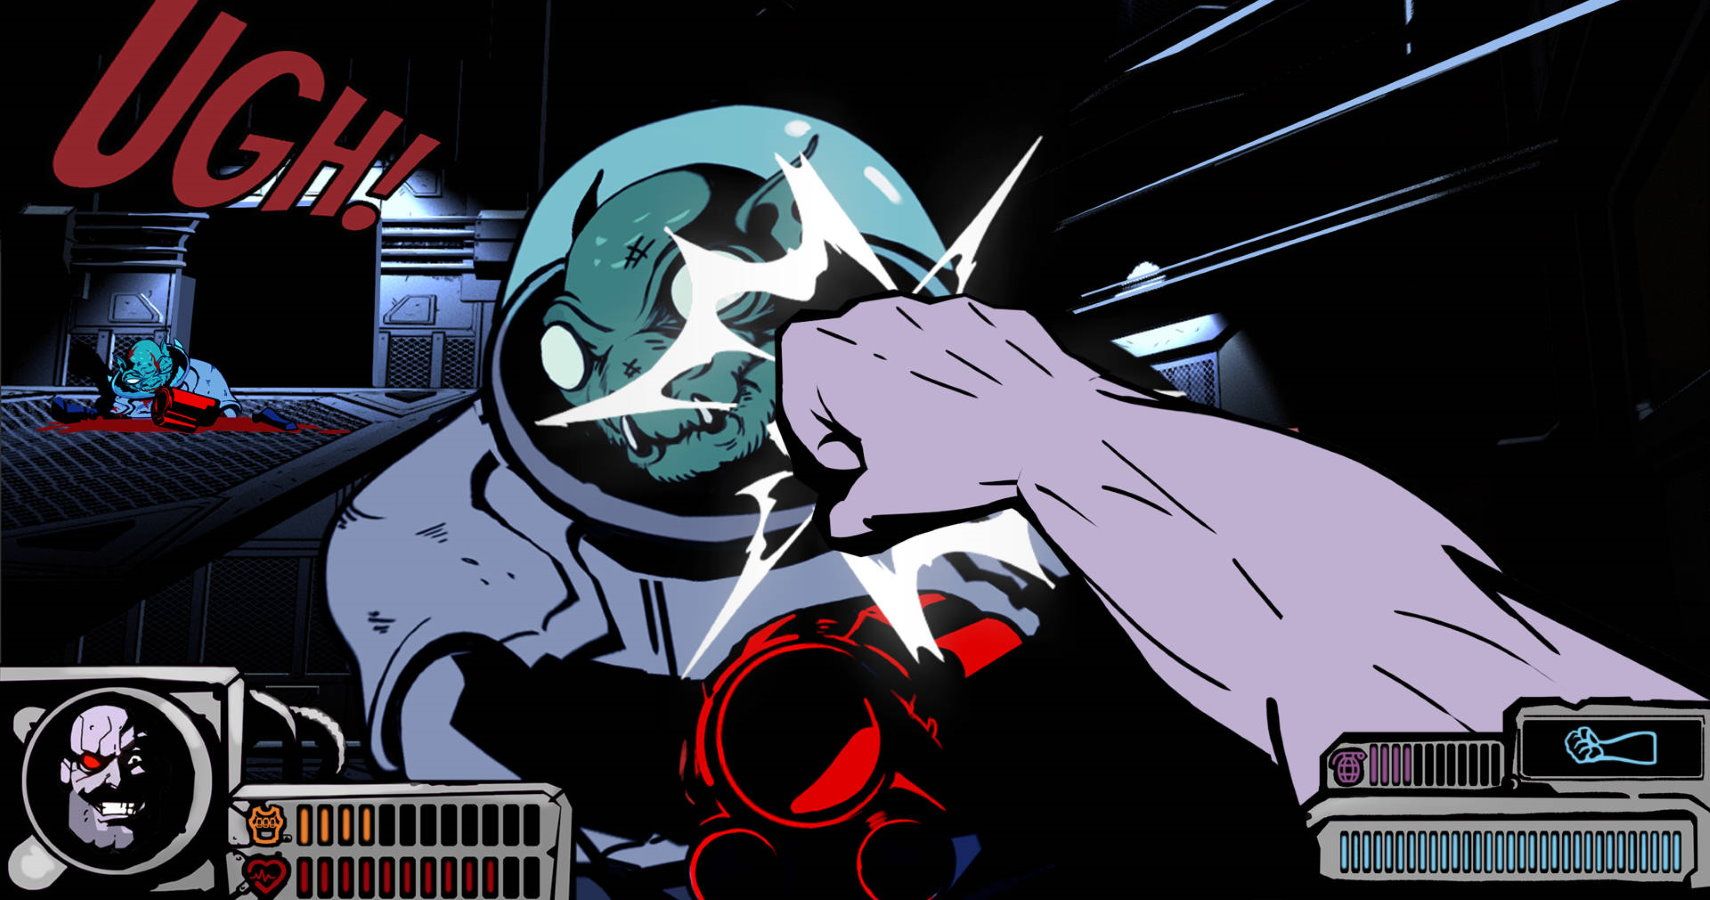 Chains of Fury Looks Like Duke Nukem In A Comic Book